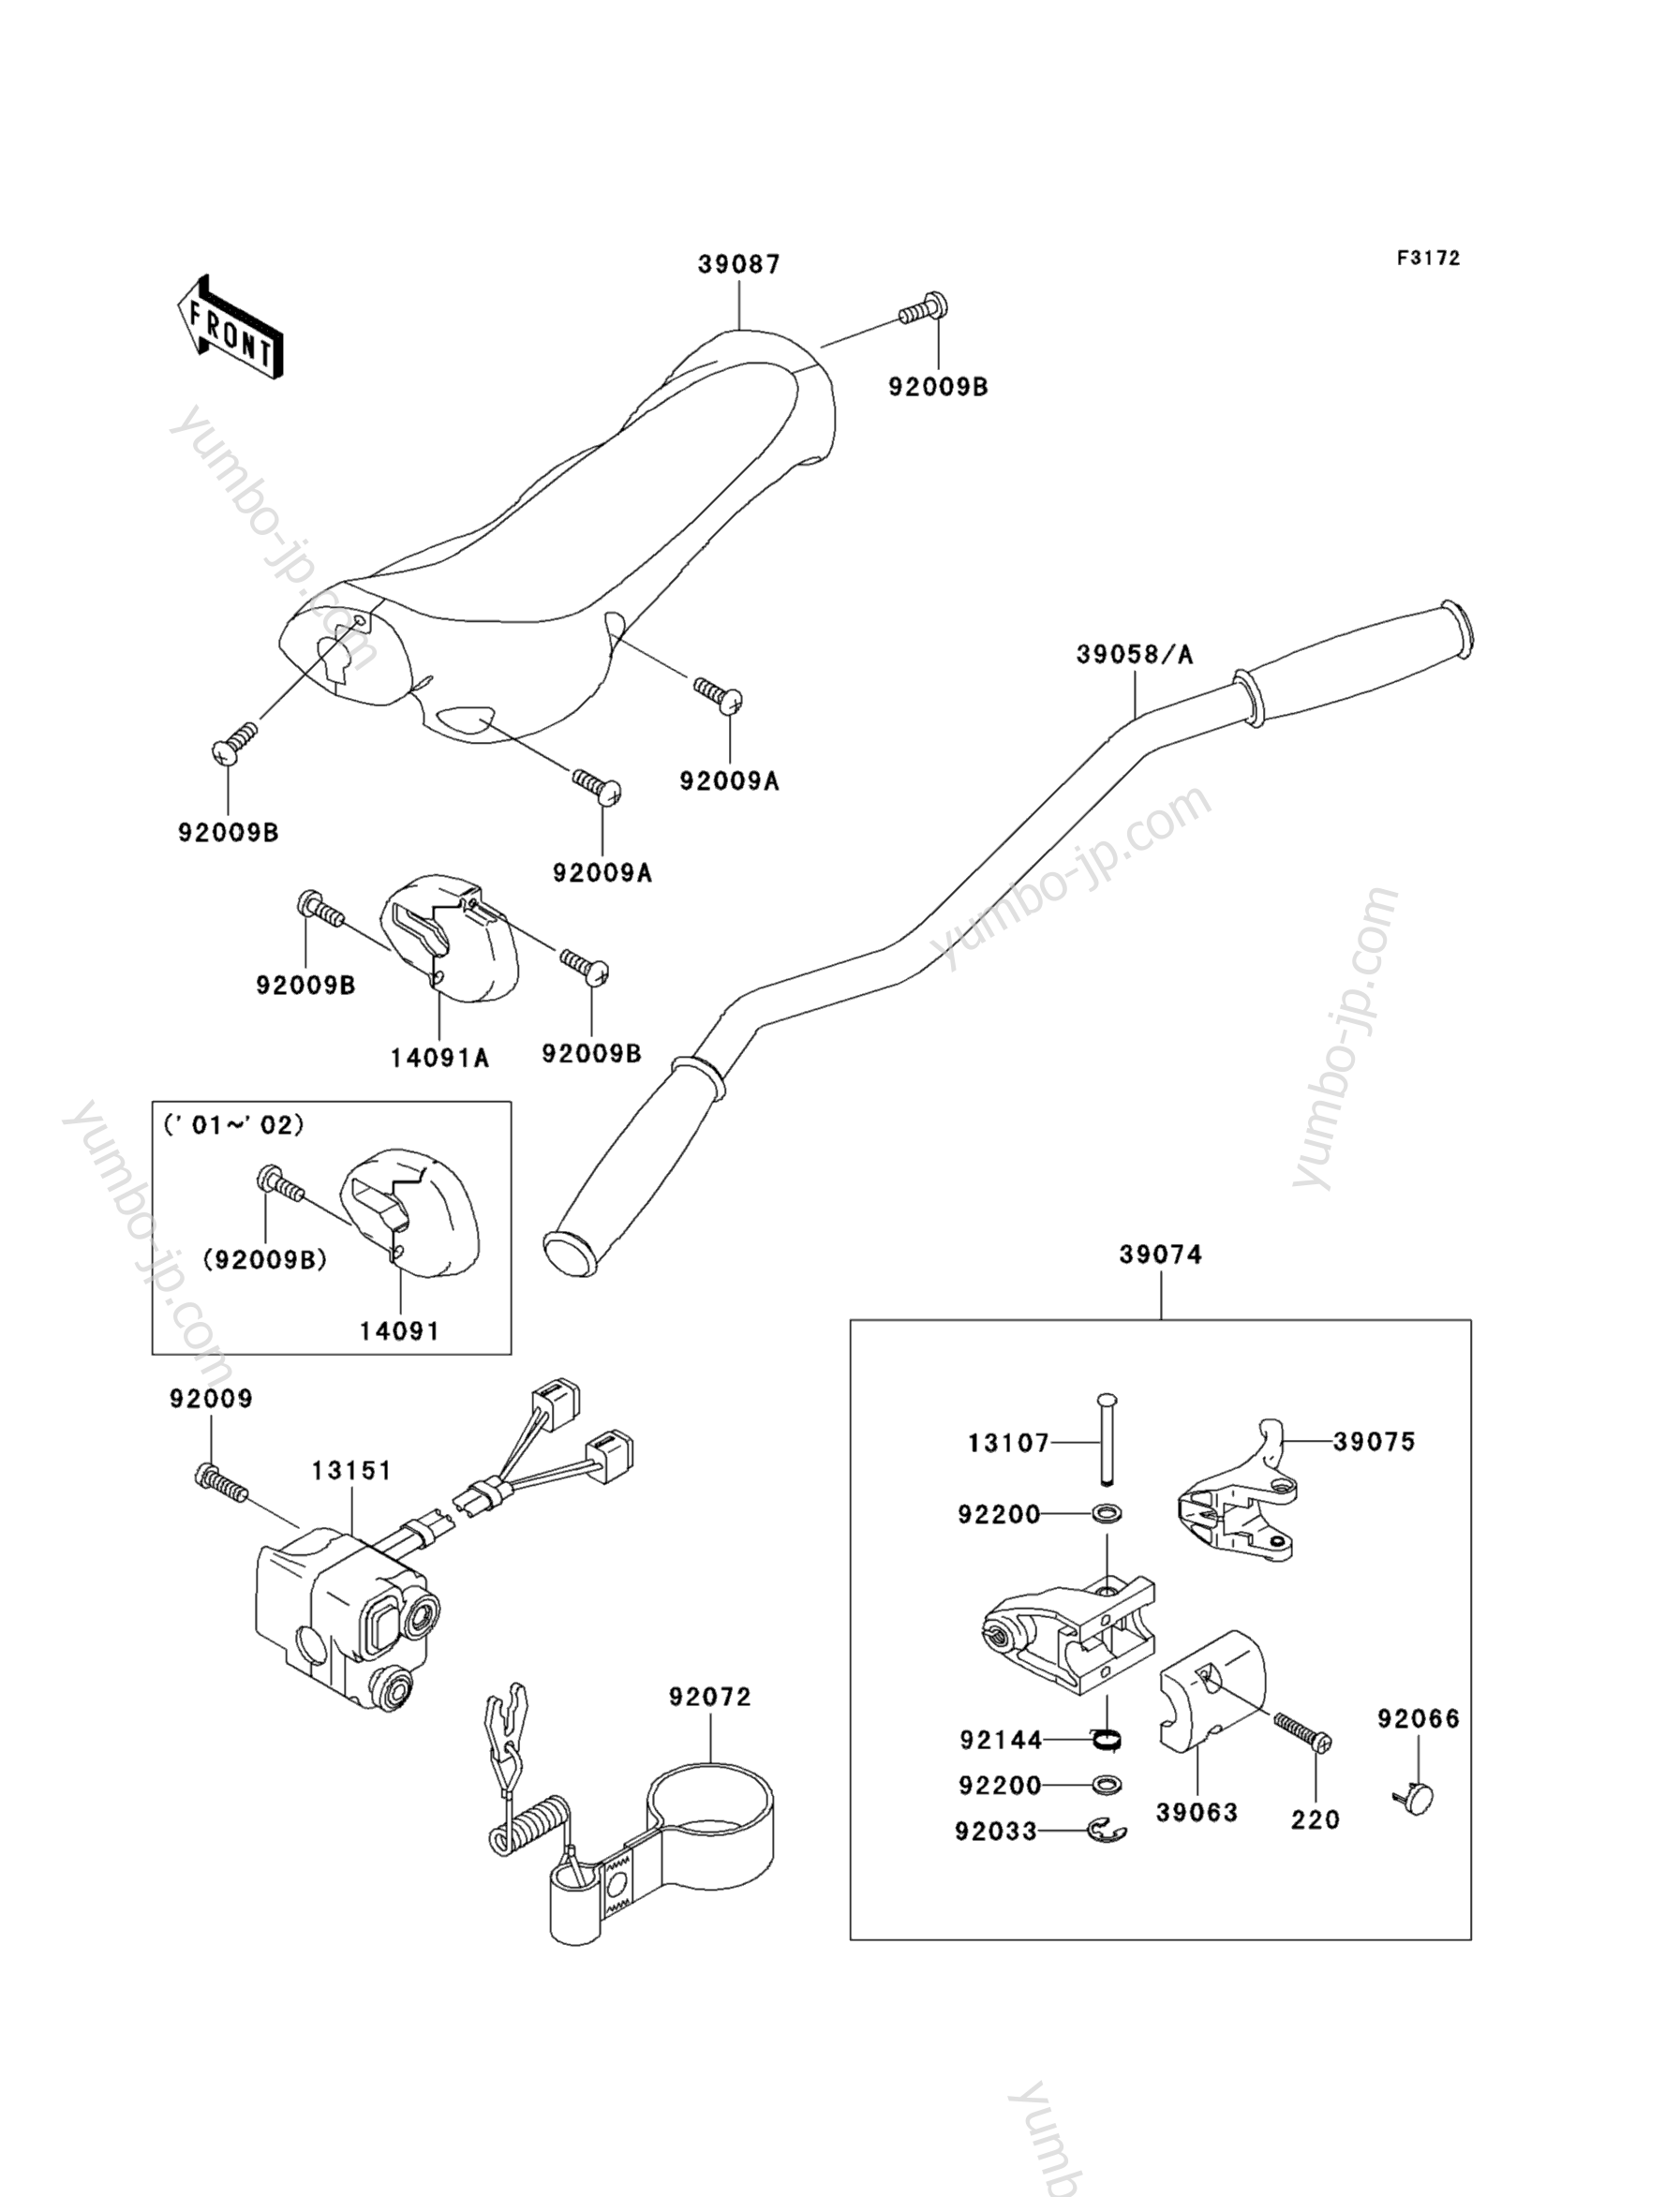 Румпель (рукоятка управления) для гидроциклов KAWASAKI JET SKI ULTRA 130 D.I. (JH1100-B1) 2001 г.